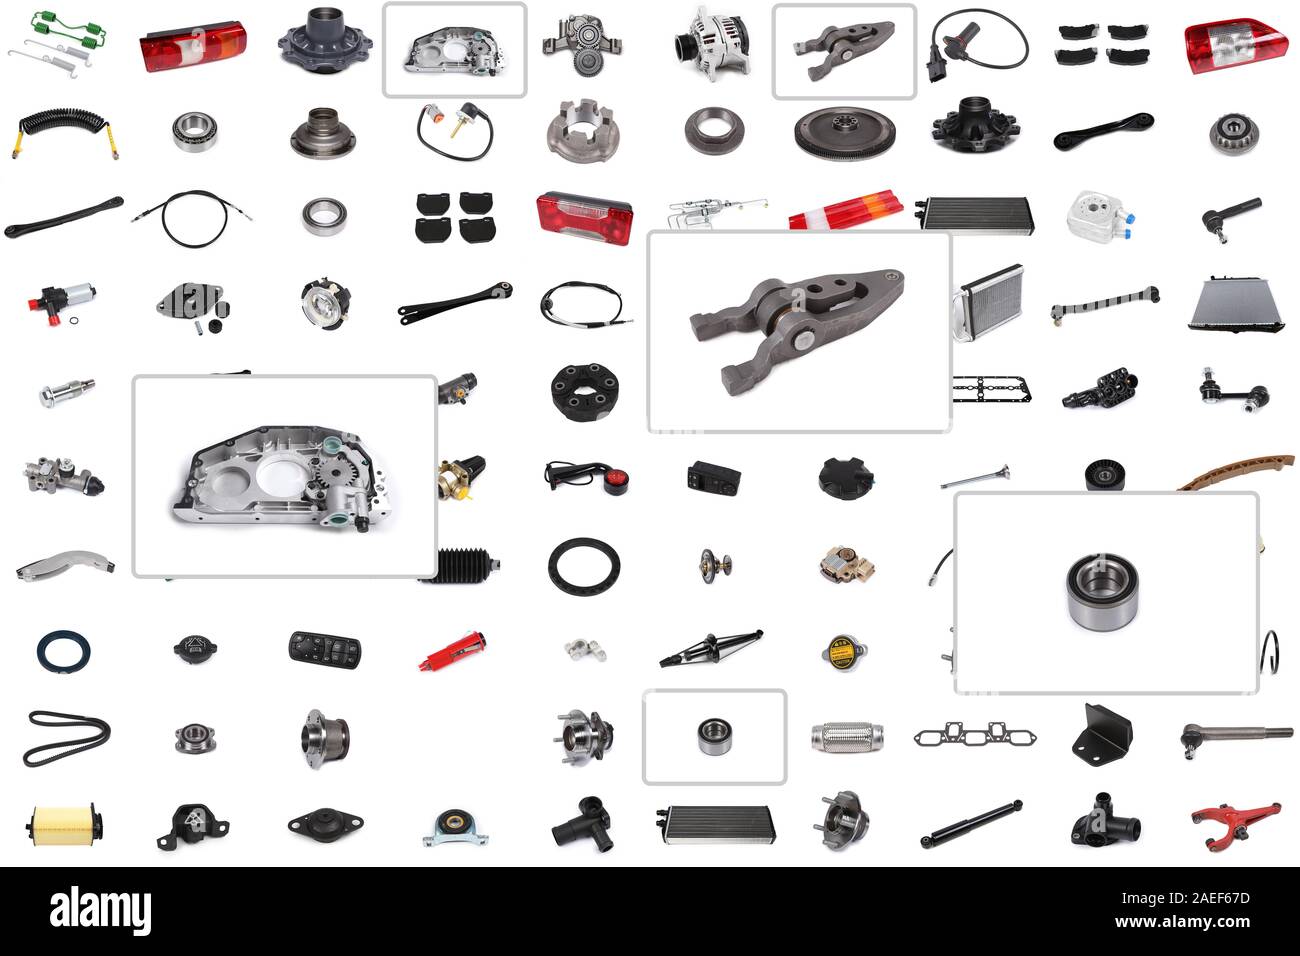 Hintergrund für einen Katalog oder ein Auto parts Auswahl Programm mit einem Schwerpunkt auf drei Teile: ausrückgabel, Lager und Ölpumpe. Stockfoto